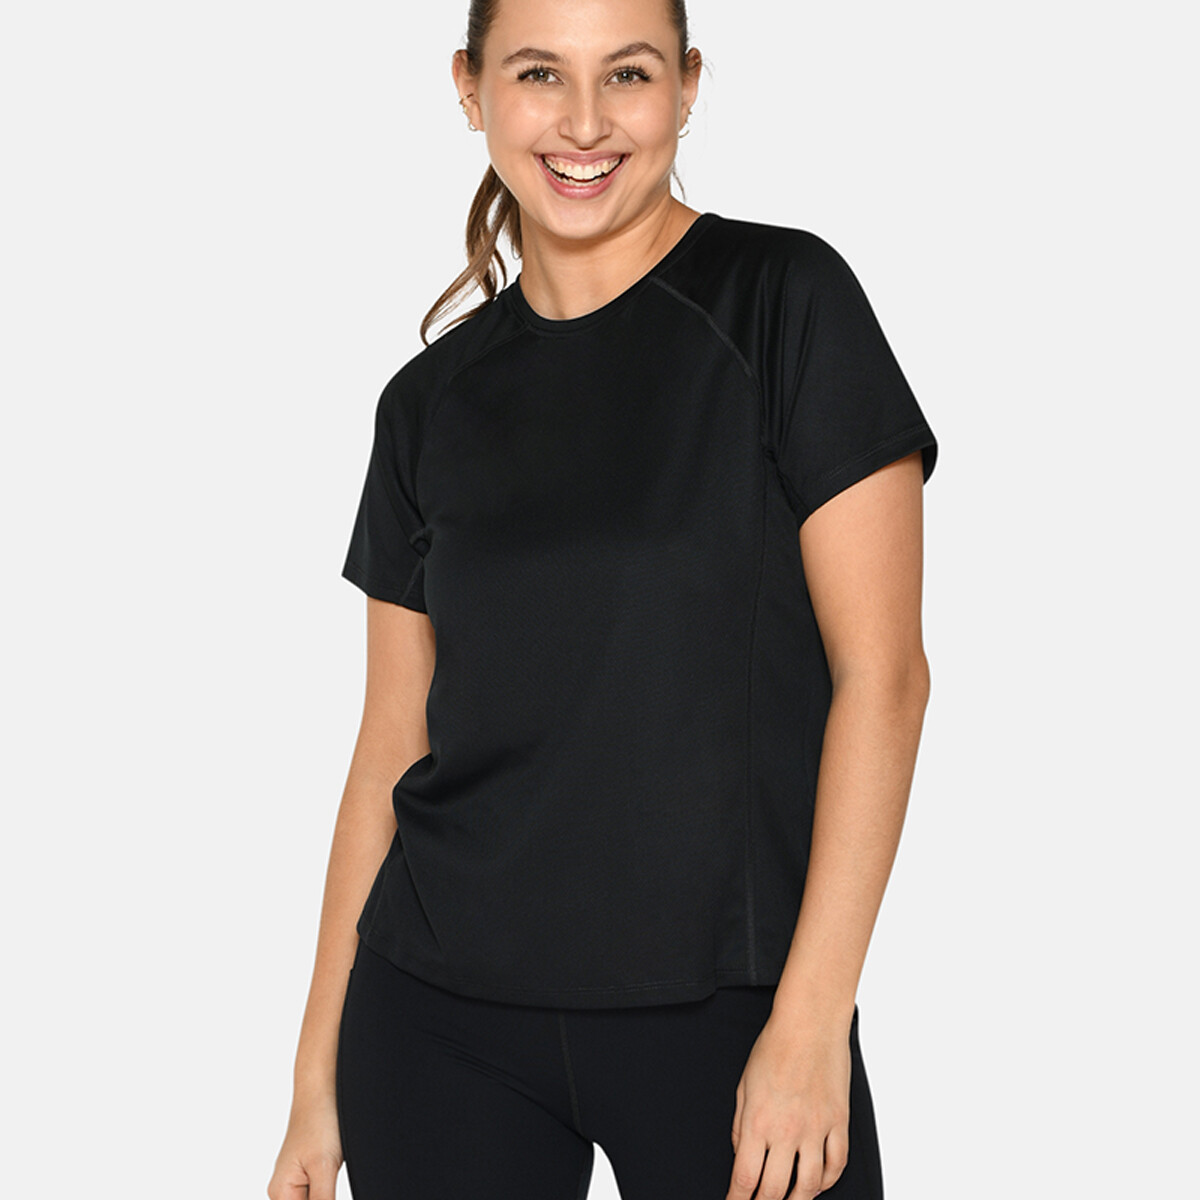 Se Zebdia Women Sports T-shirt, Farve: Sort, Størrelse: M, Dame hos Netlingeri.dk